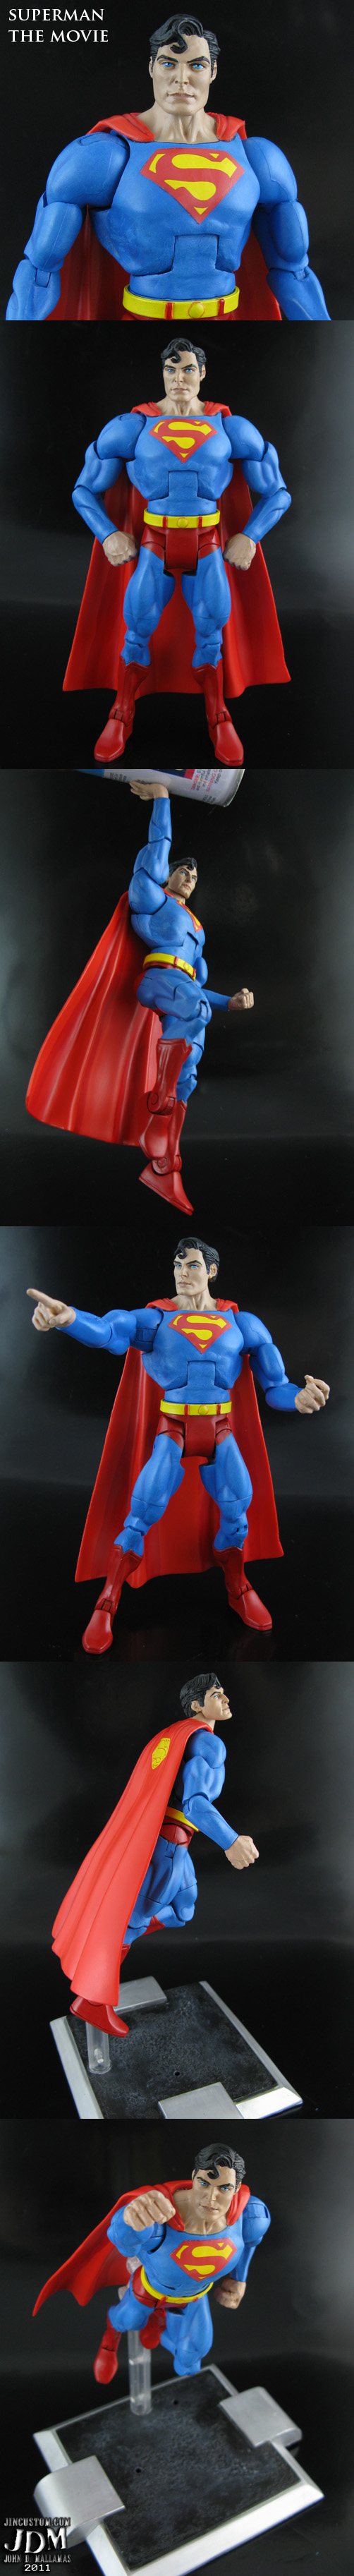 Custom Christopher Reeves Superman